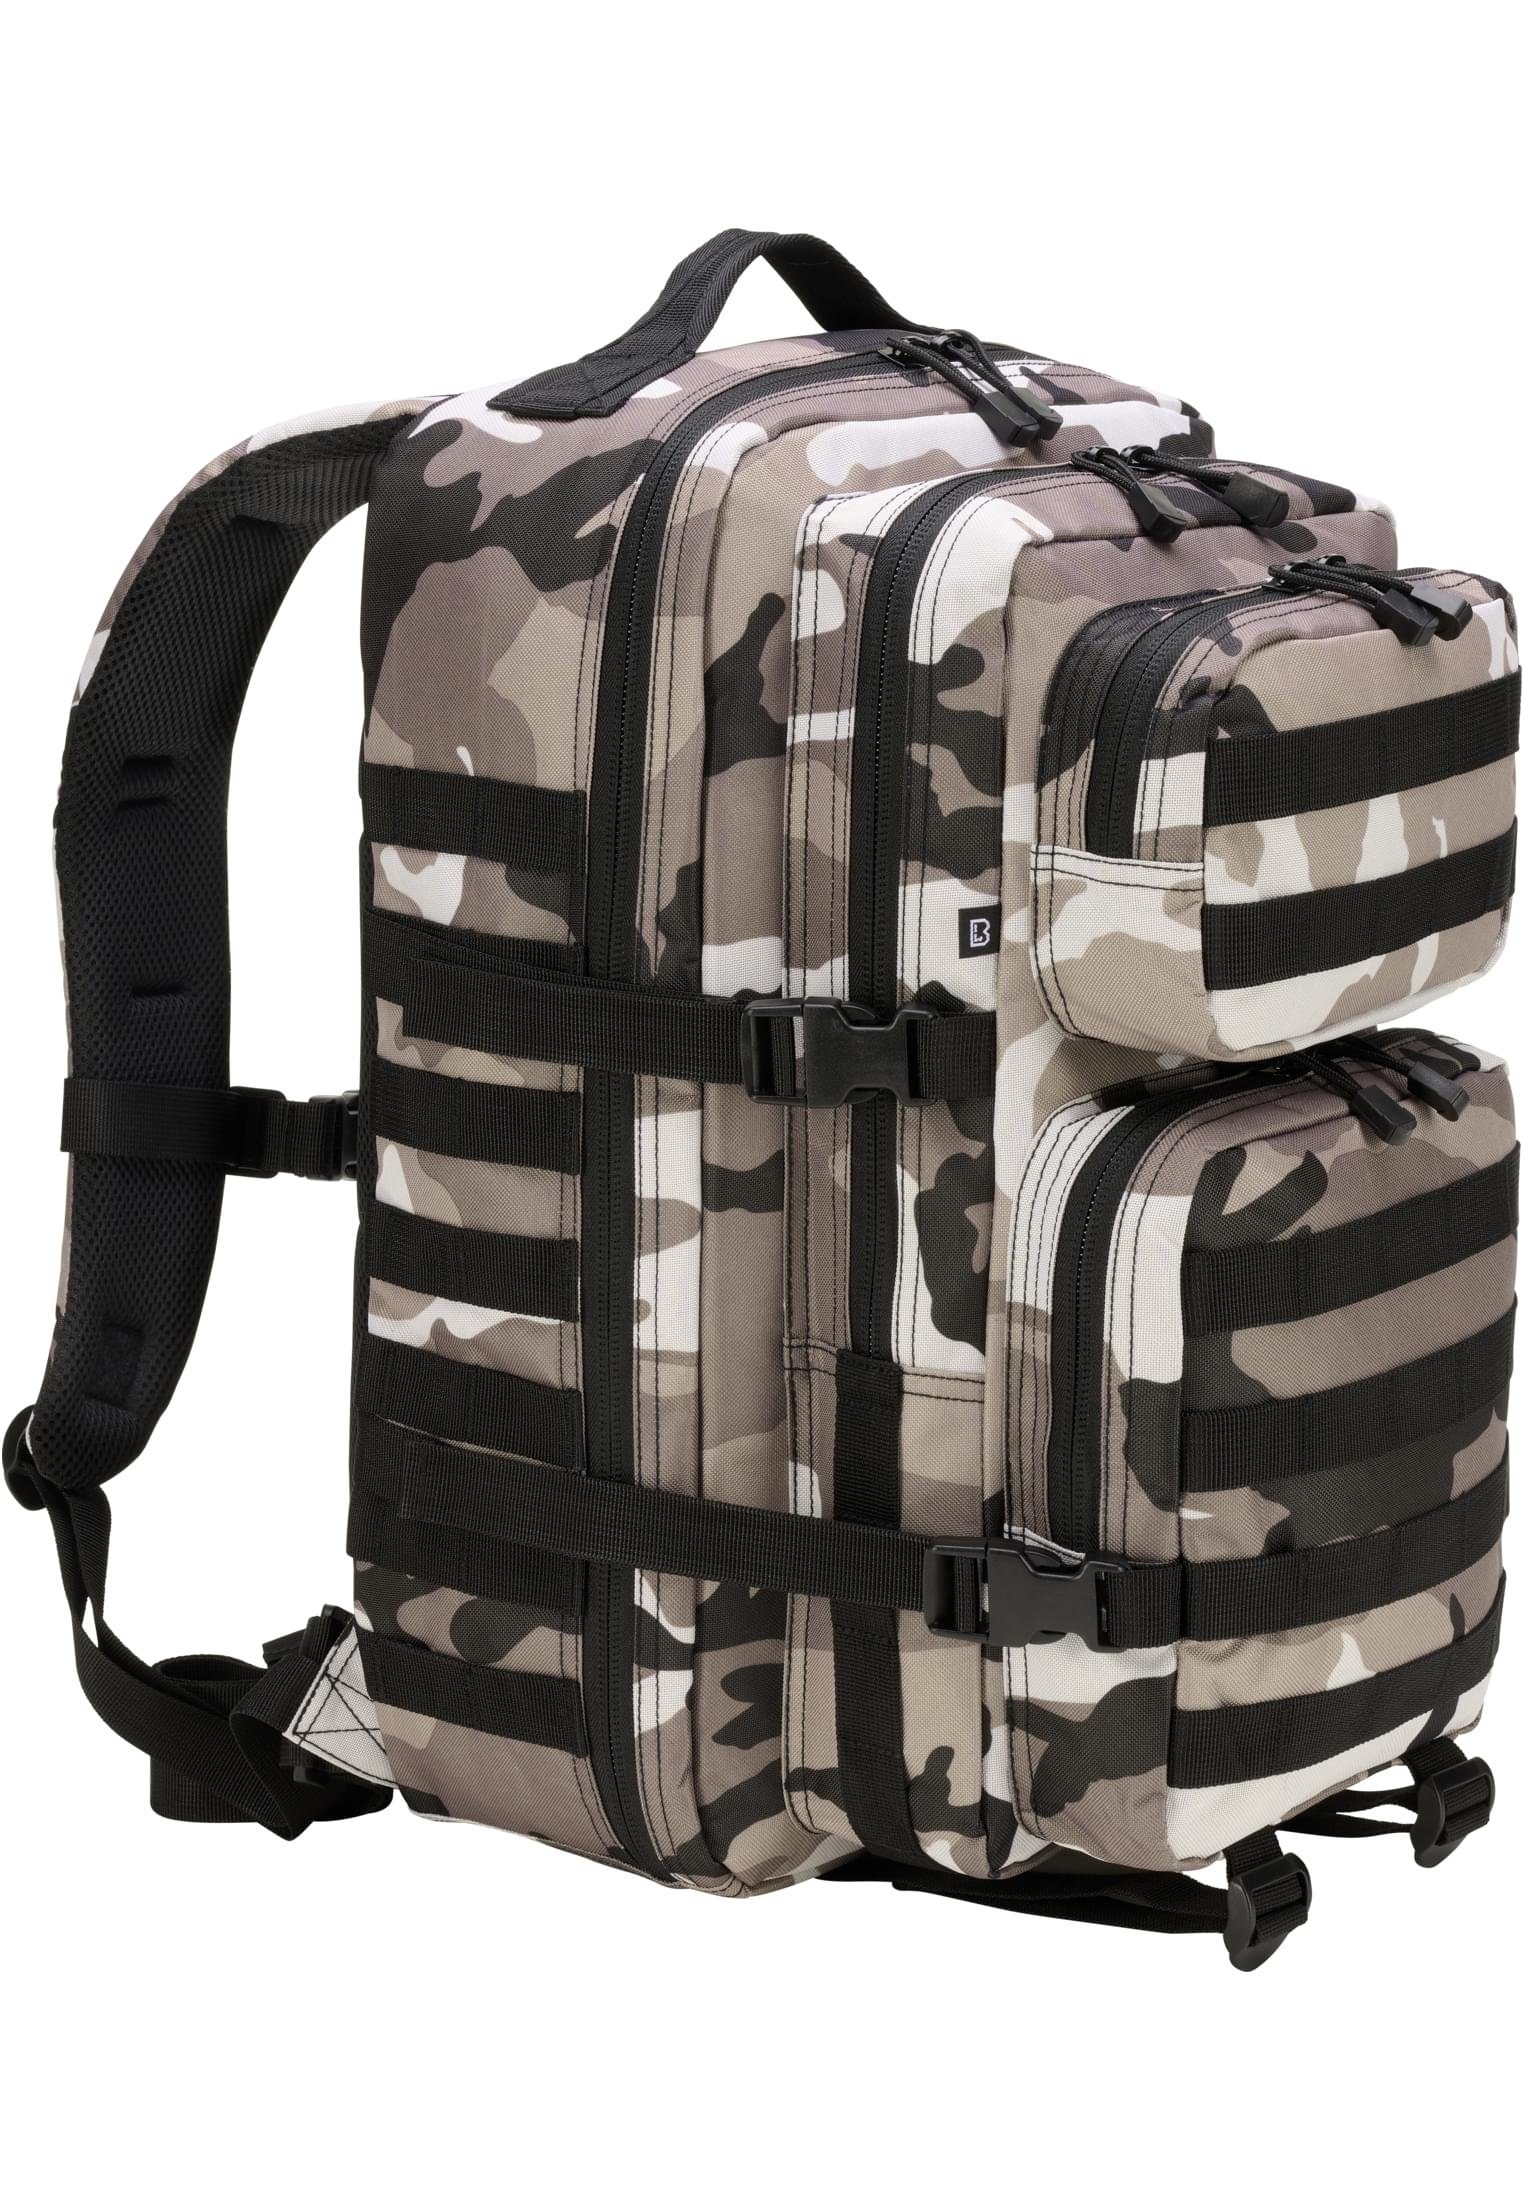 Brandit Rucksack Accessoires camo grey Cooper Large dark Backpack US